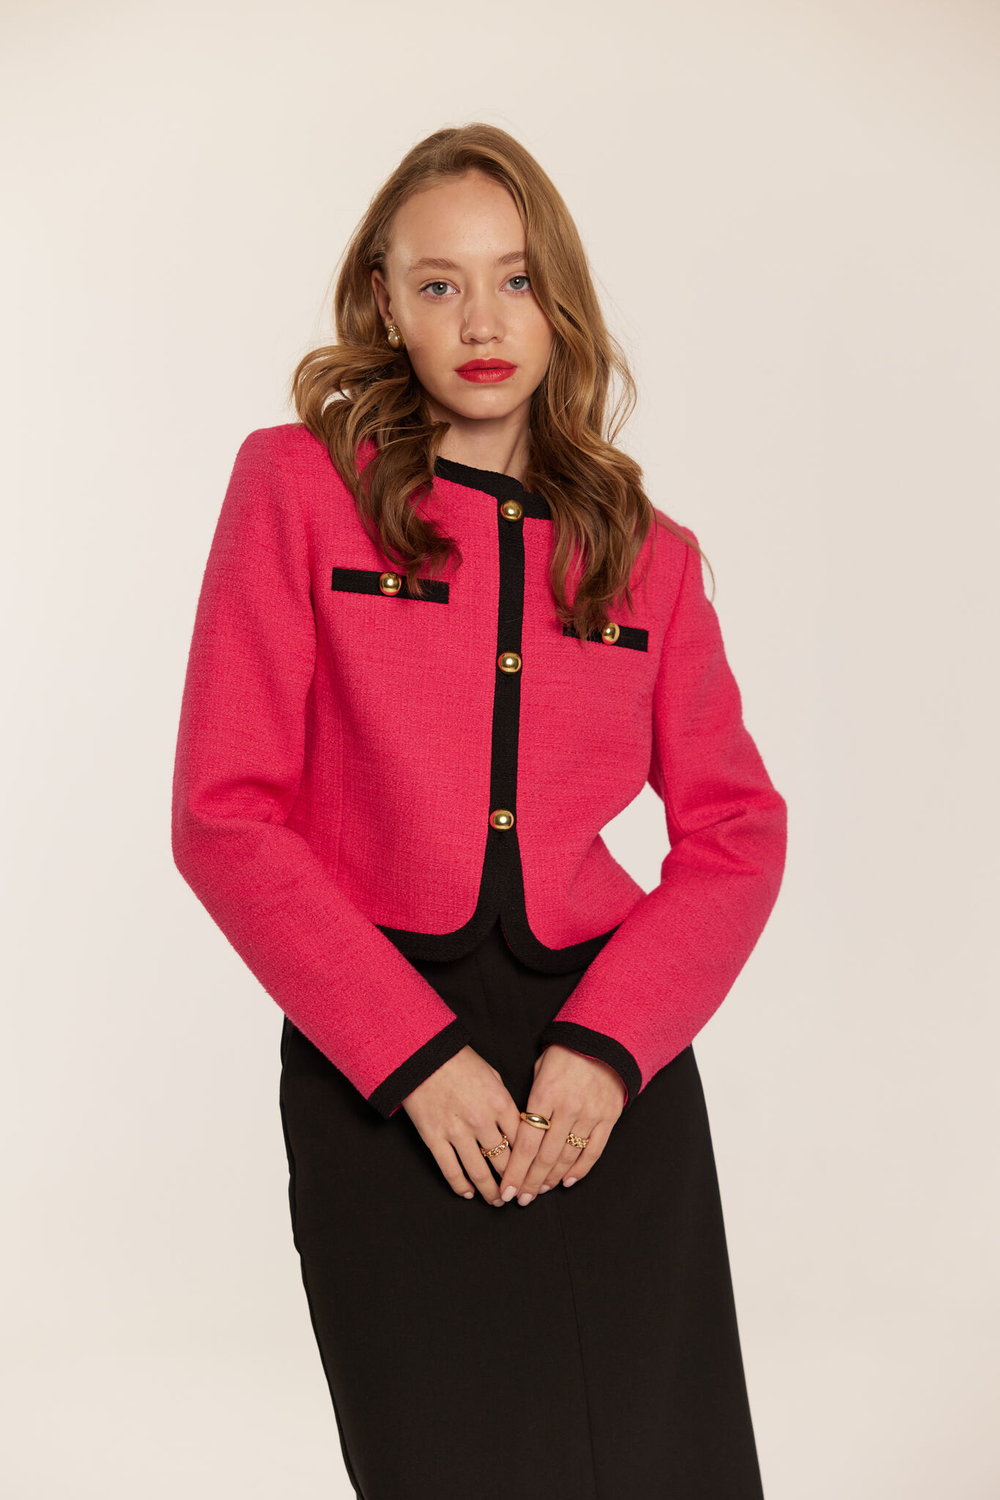 Пиджак твидовый розовый с черной отделкой